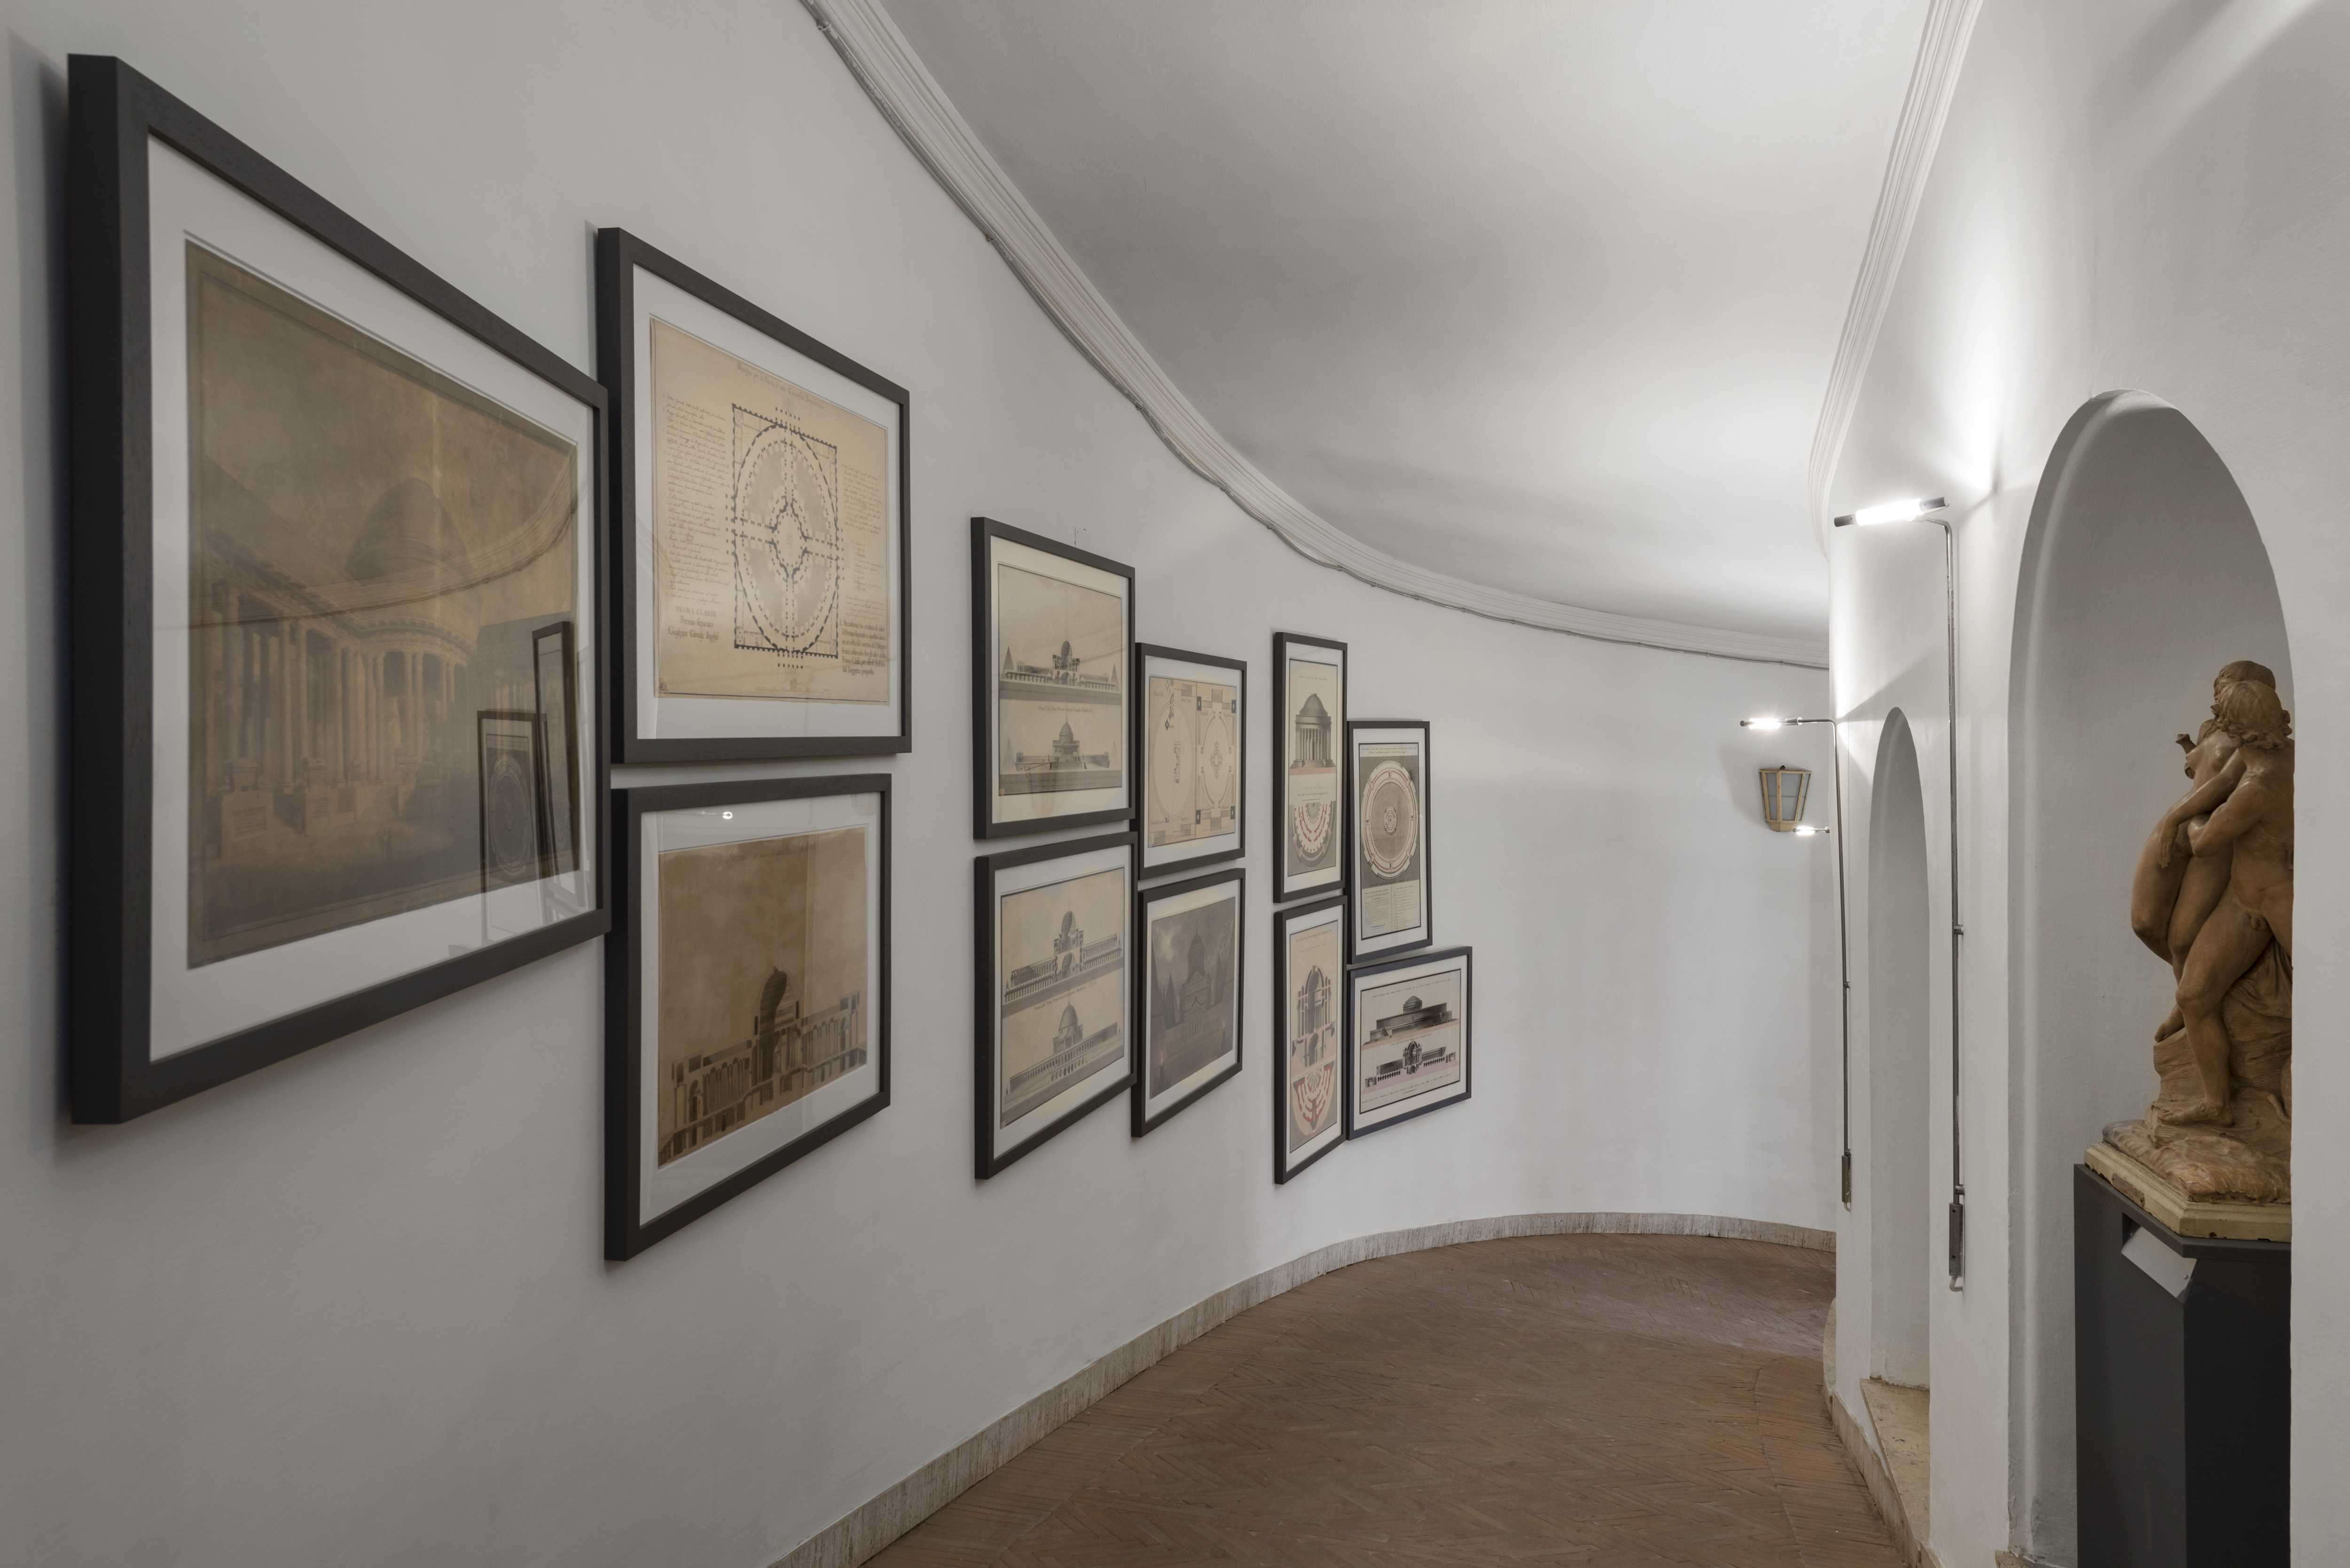 Sala dei paesaggi in Galleria dell’Accademia Nazionale di San Luca, Rome: 08 November 2013 - 31 March 2020